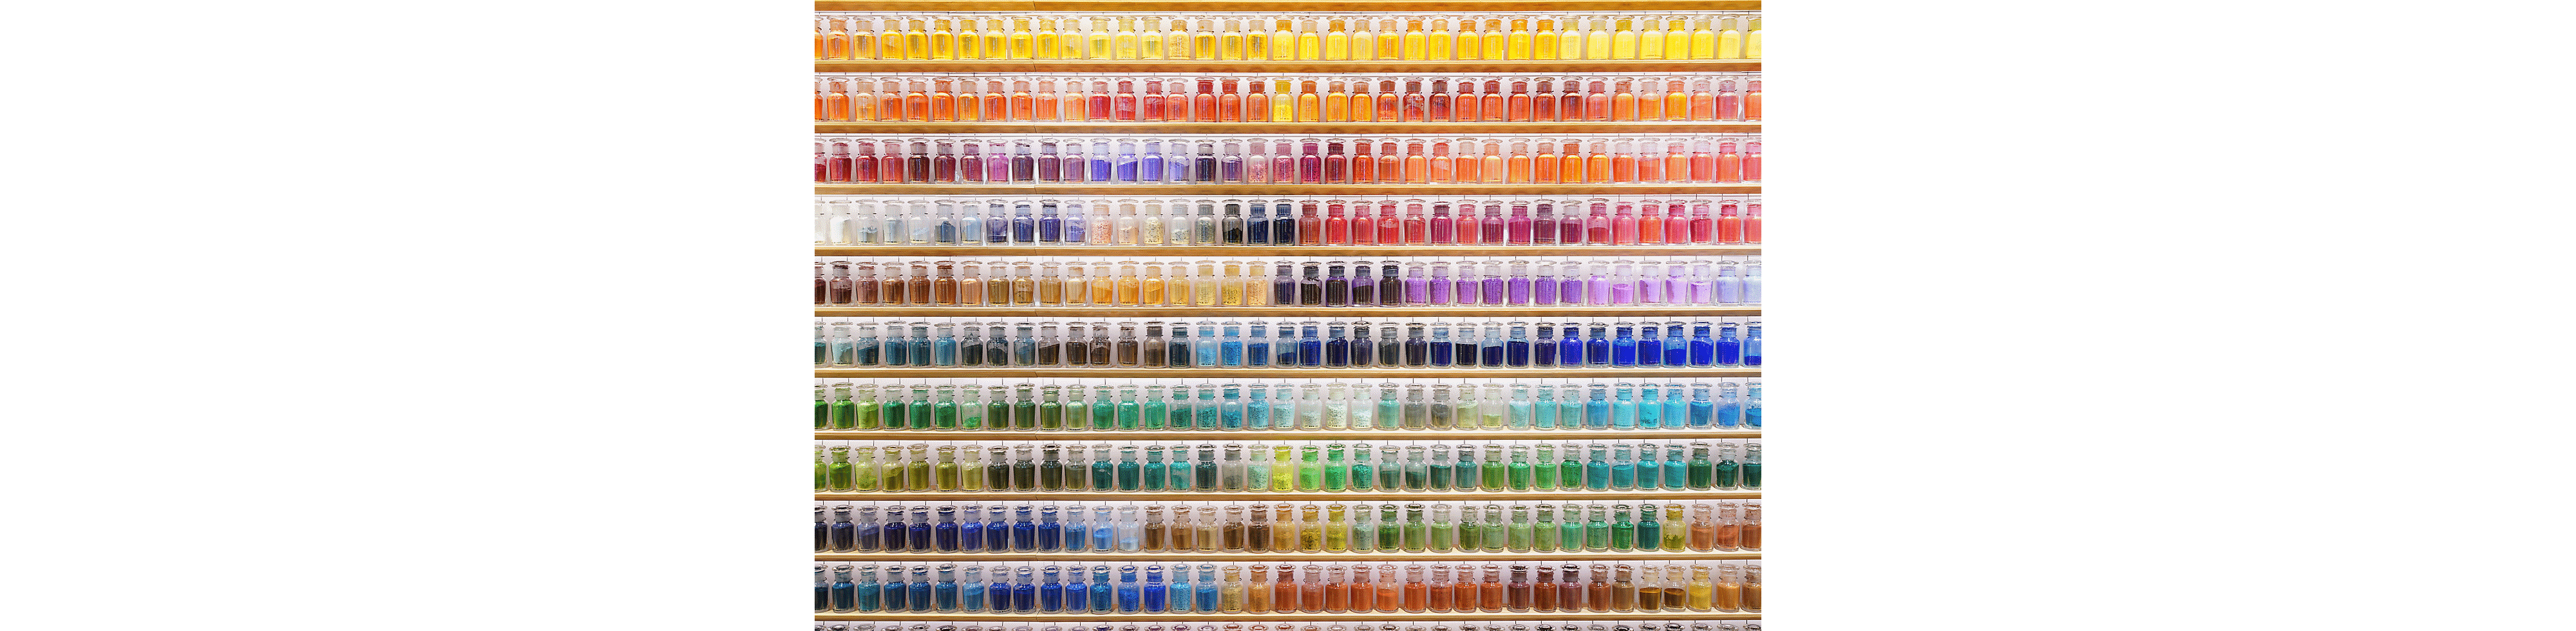 Eksempelbillede af en væg fyldt med farverige flasker